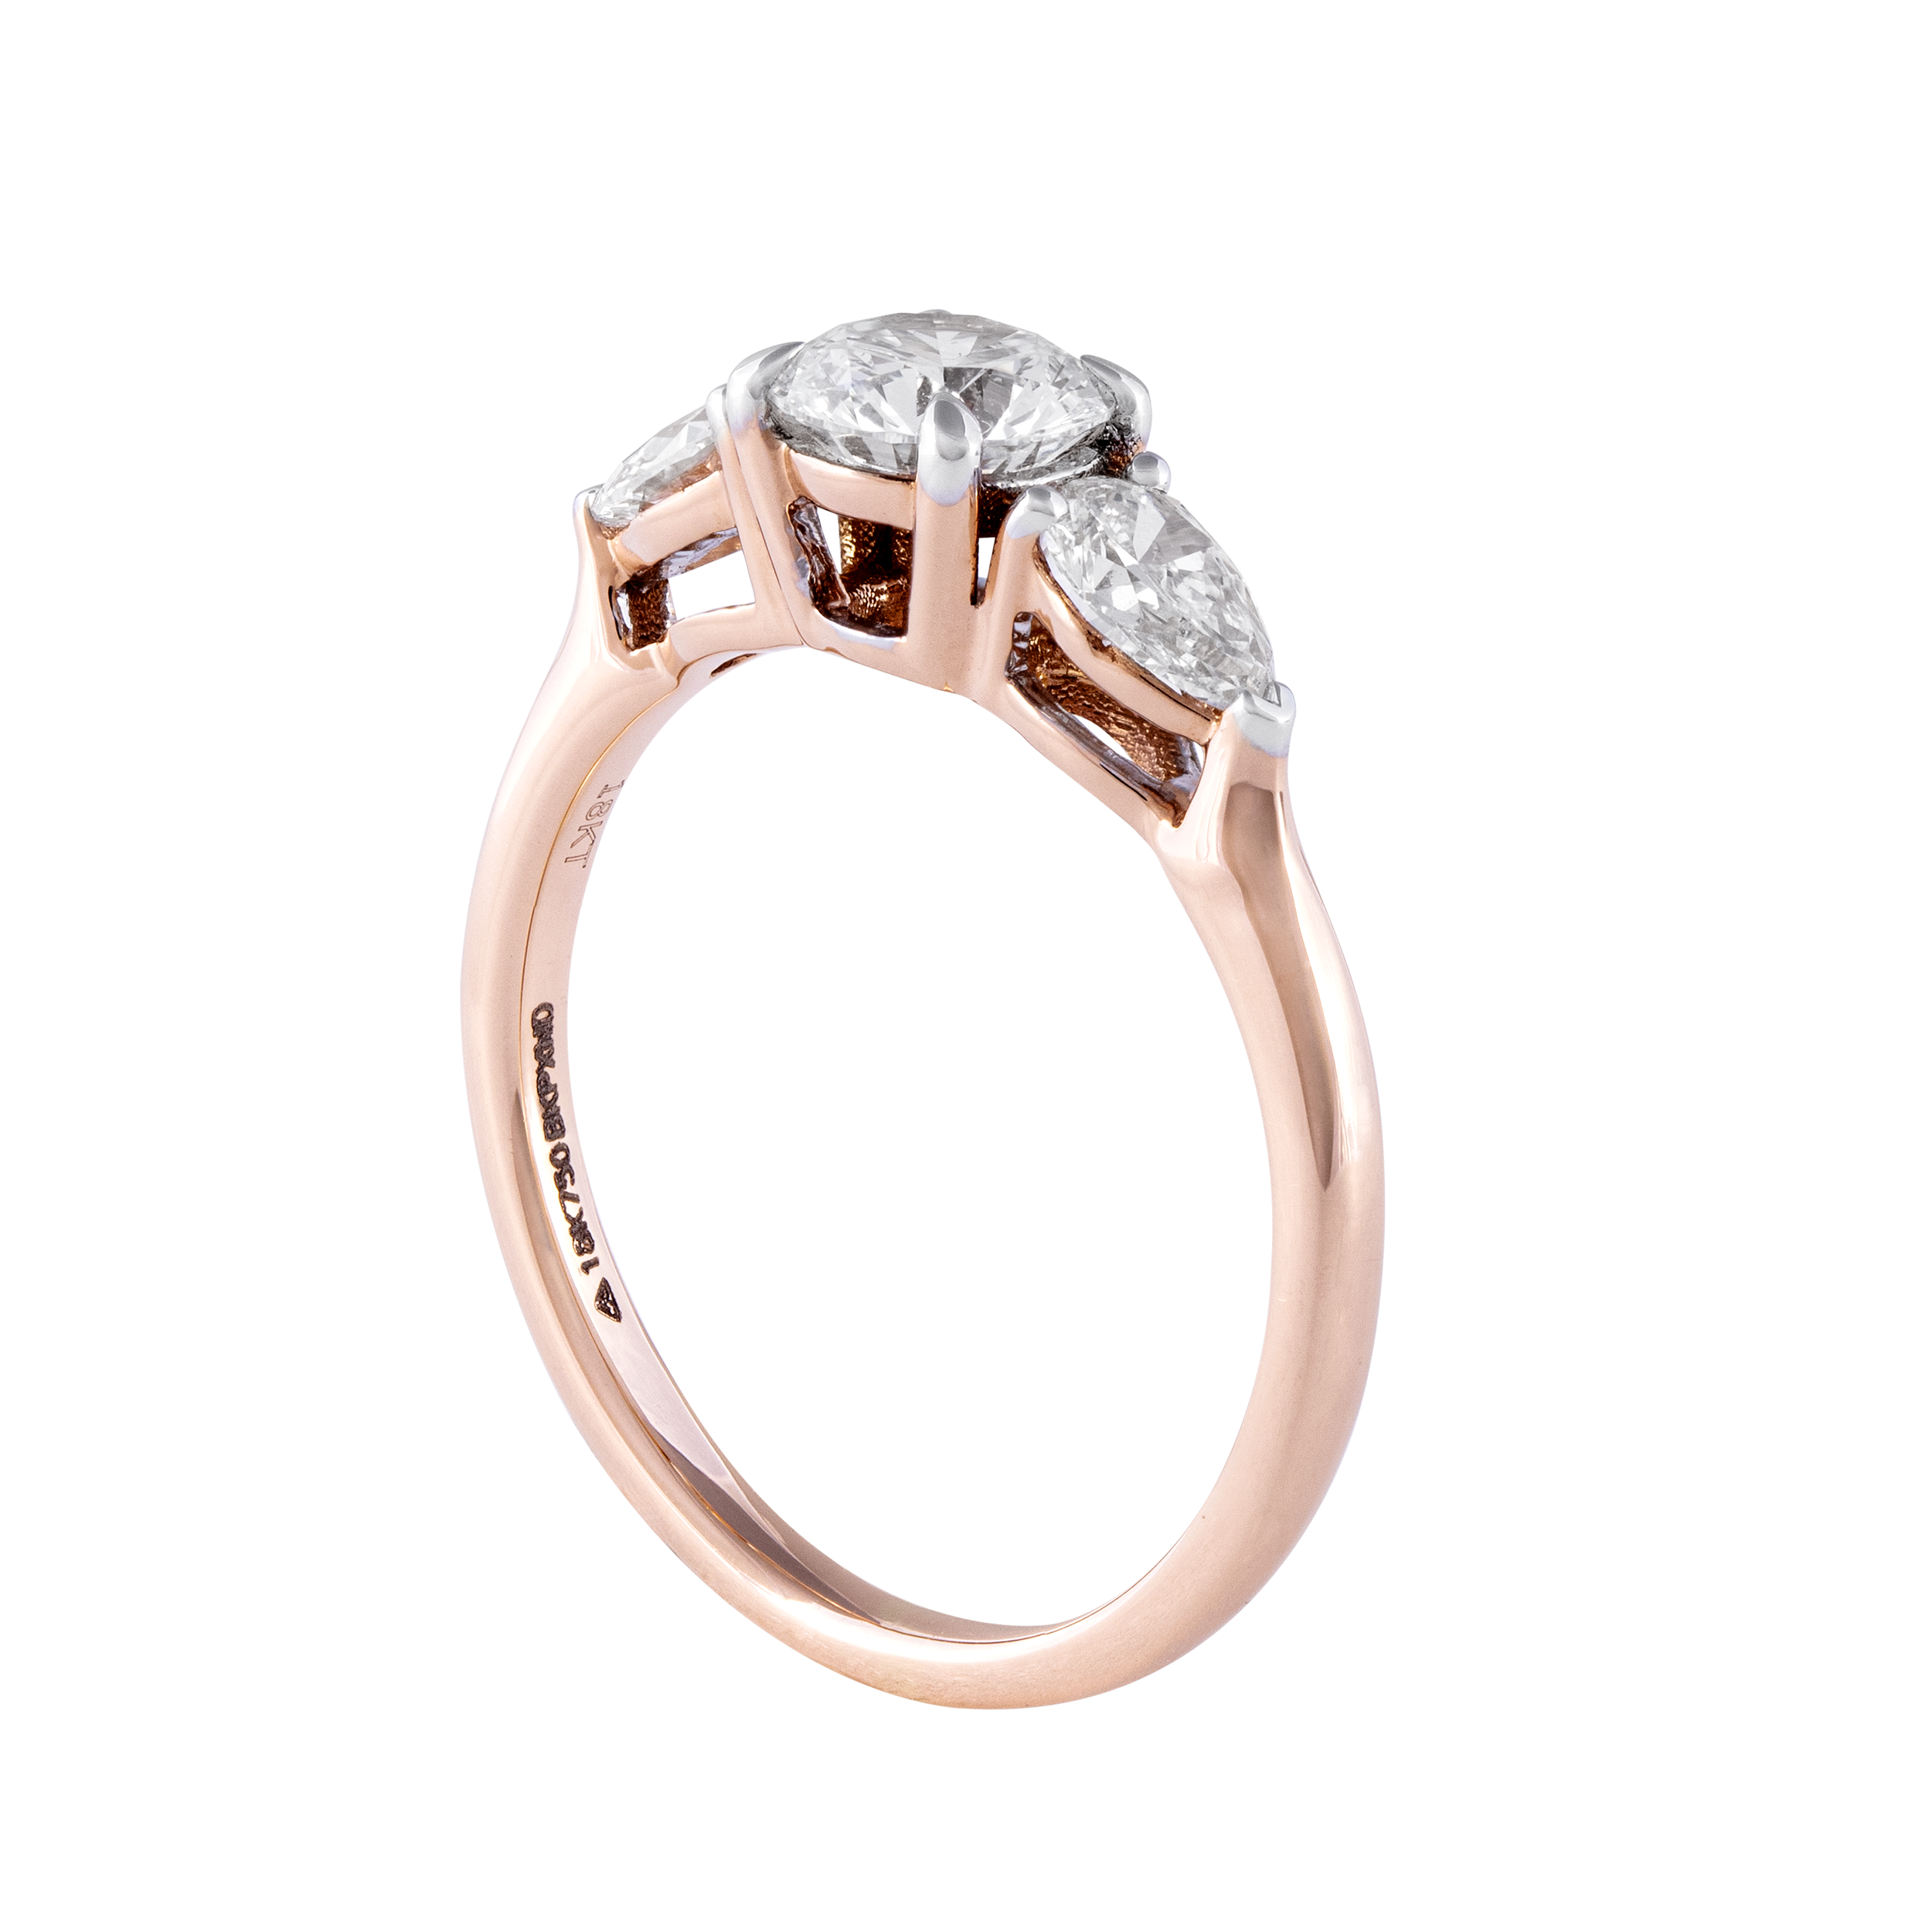 Laboratory Grown Diamond Ring | SKU : 0002945965